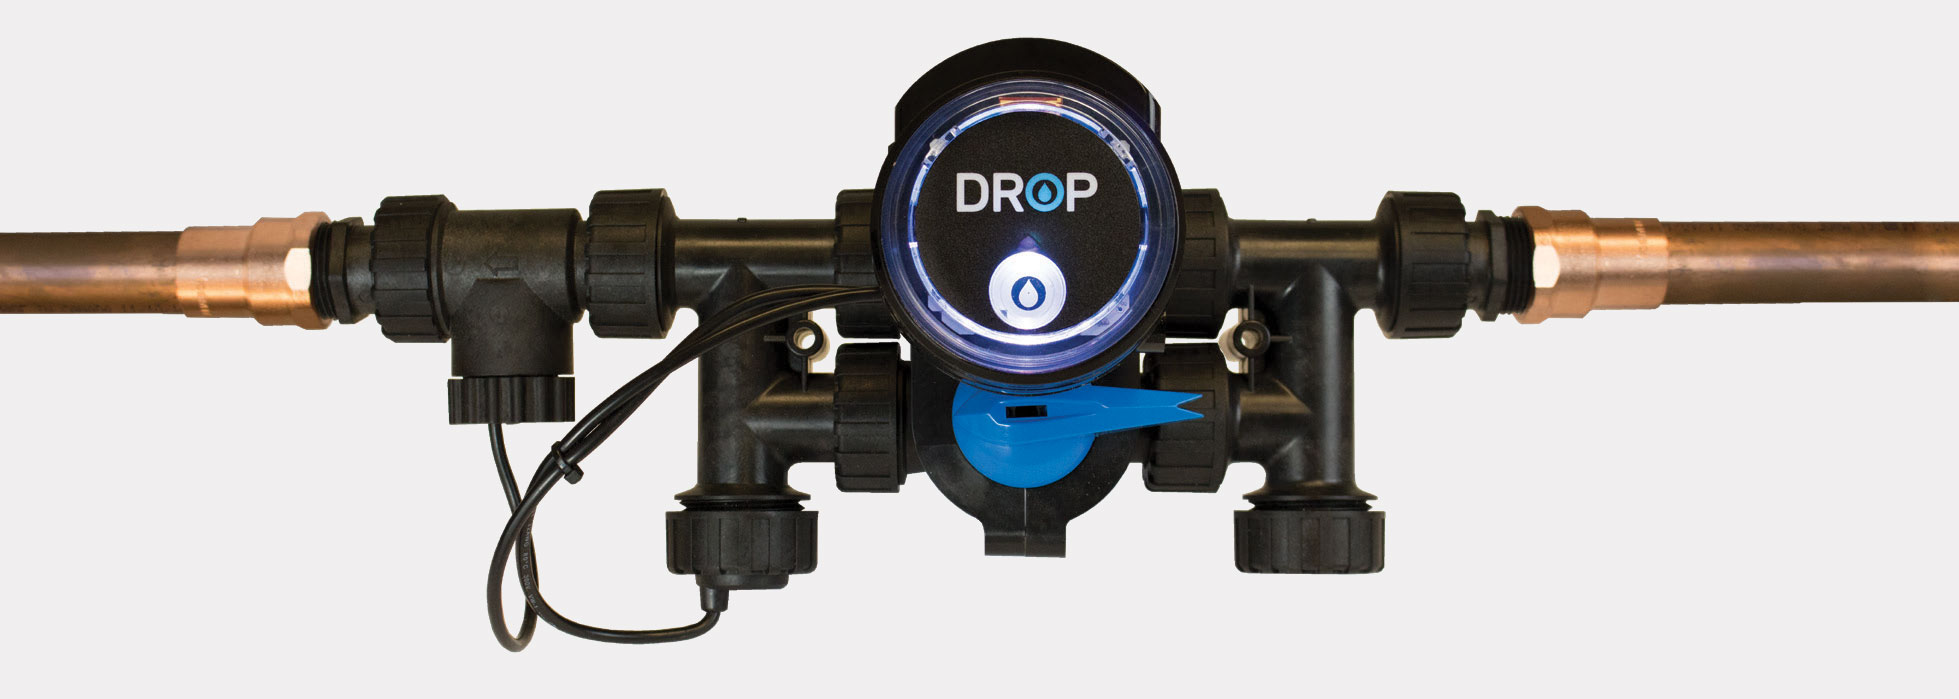 DROP Leak Detectors - DROP